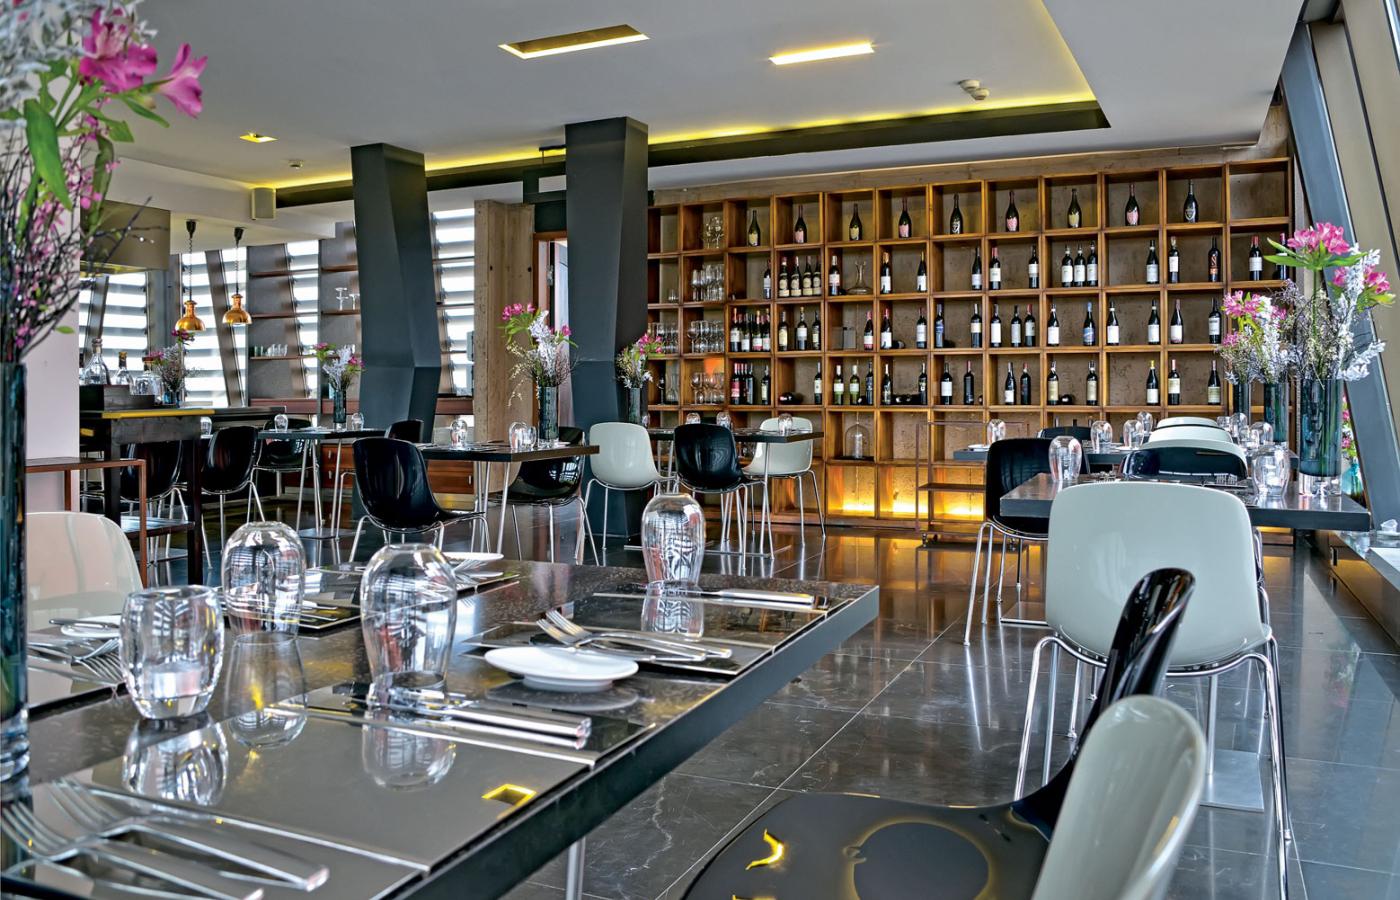 Acquario to jedna z dwóch restauracji w hotelu Monopol we Wrocławiu. Obie znalazły uznanie ekspertów przewodnika Gault&Millau.